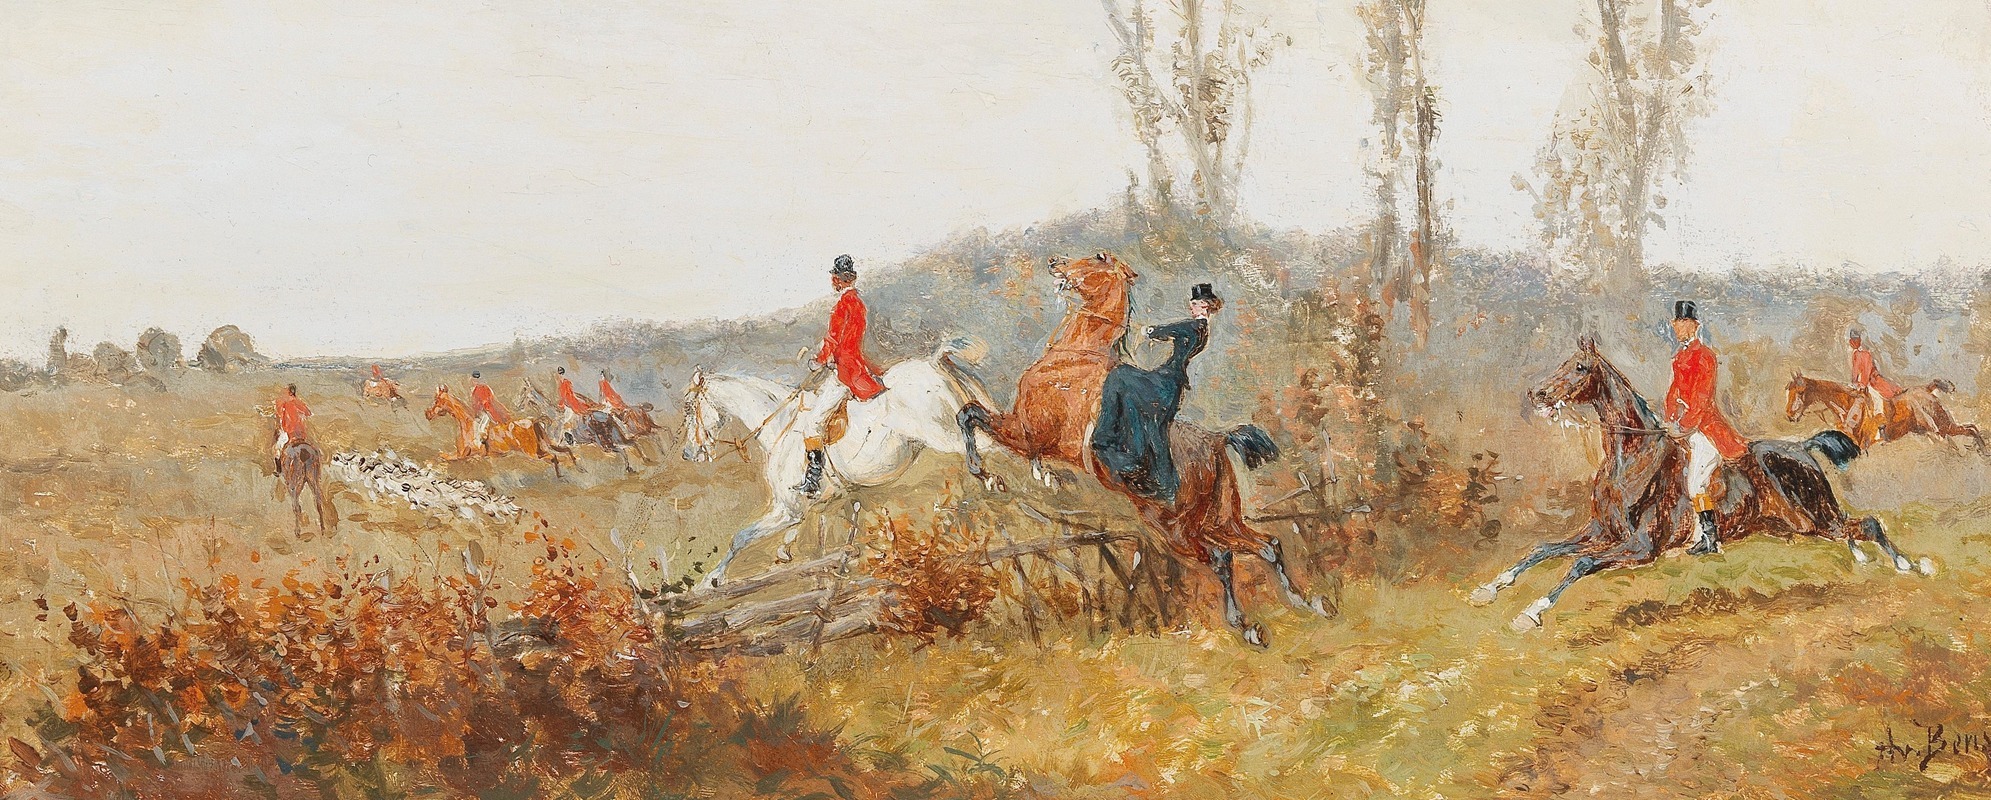 Alexander Von Bensa - On The Trail